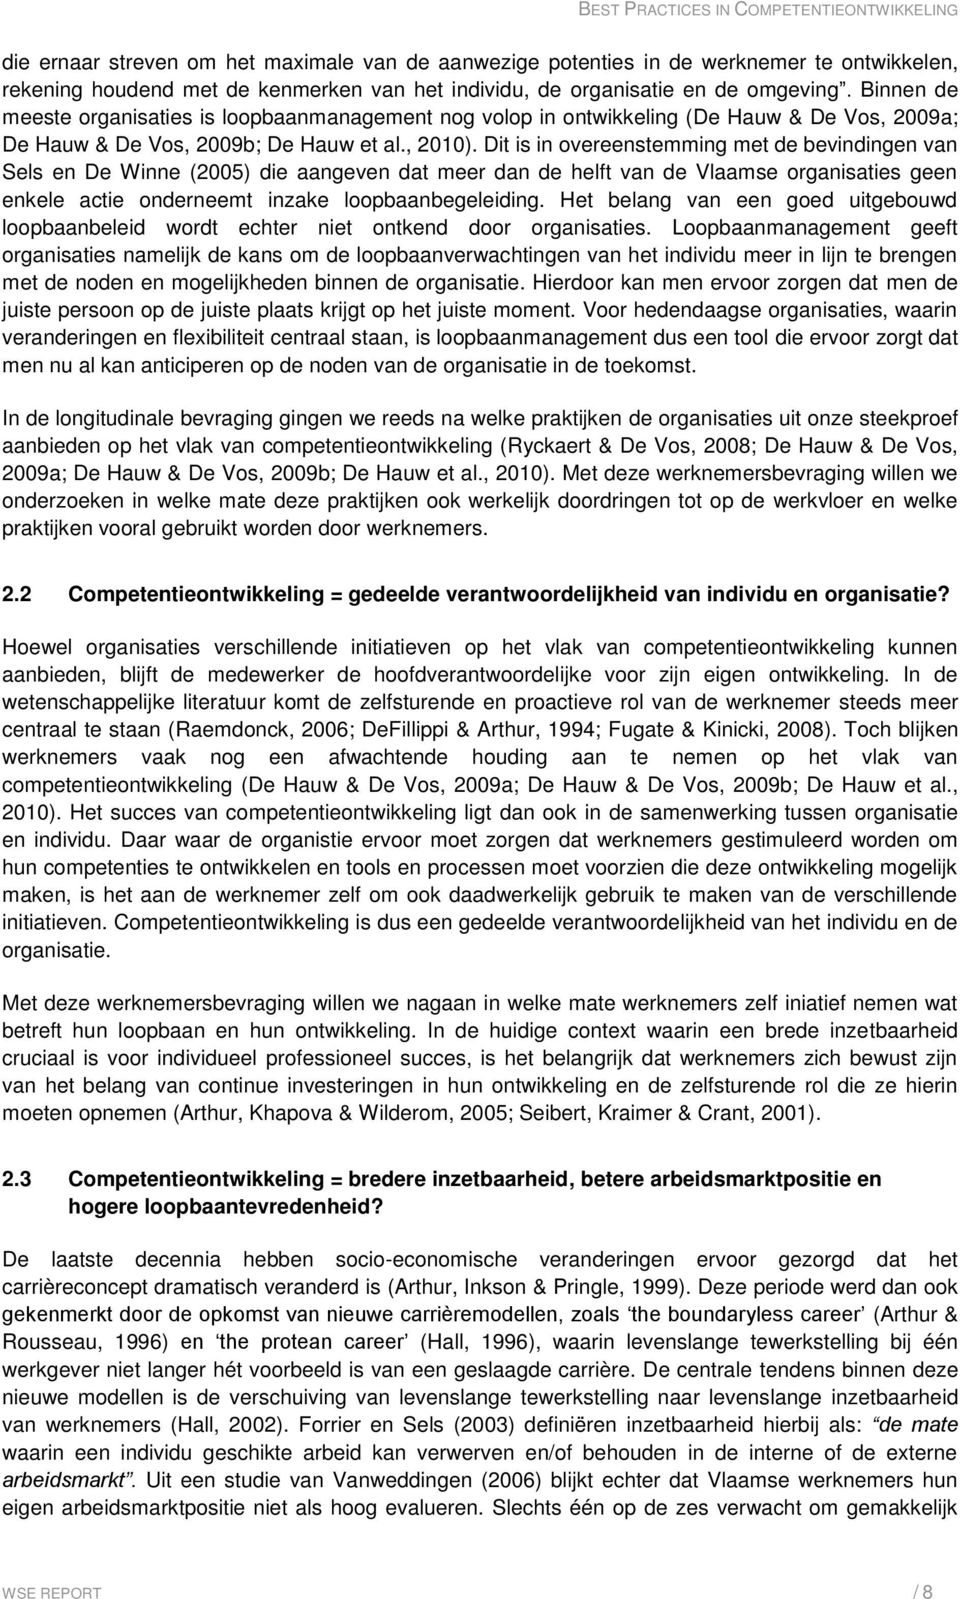 Dit is in overeenstemming met de bevindingen van Sels en De Winne (2005) die aangeven dat meer dan de helft van de Vlaamse organisaties geen enkele actie onderneemt inzake loopbaanbegeleiding.